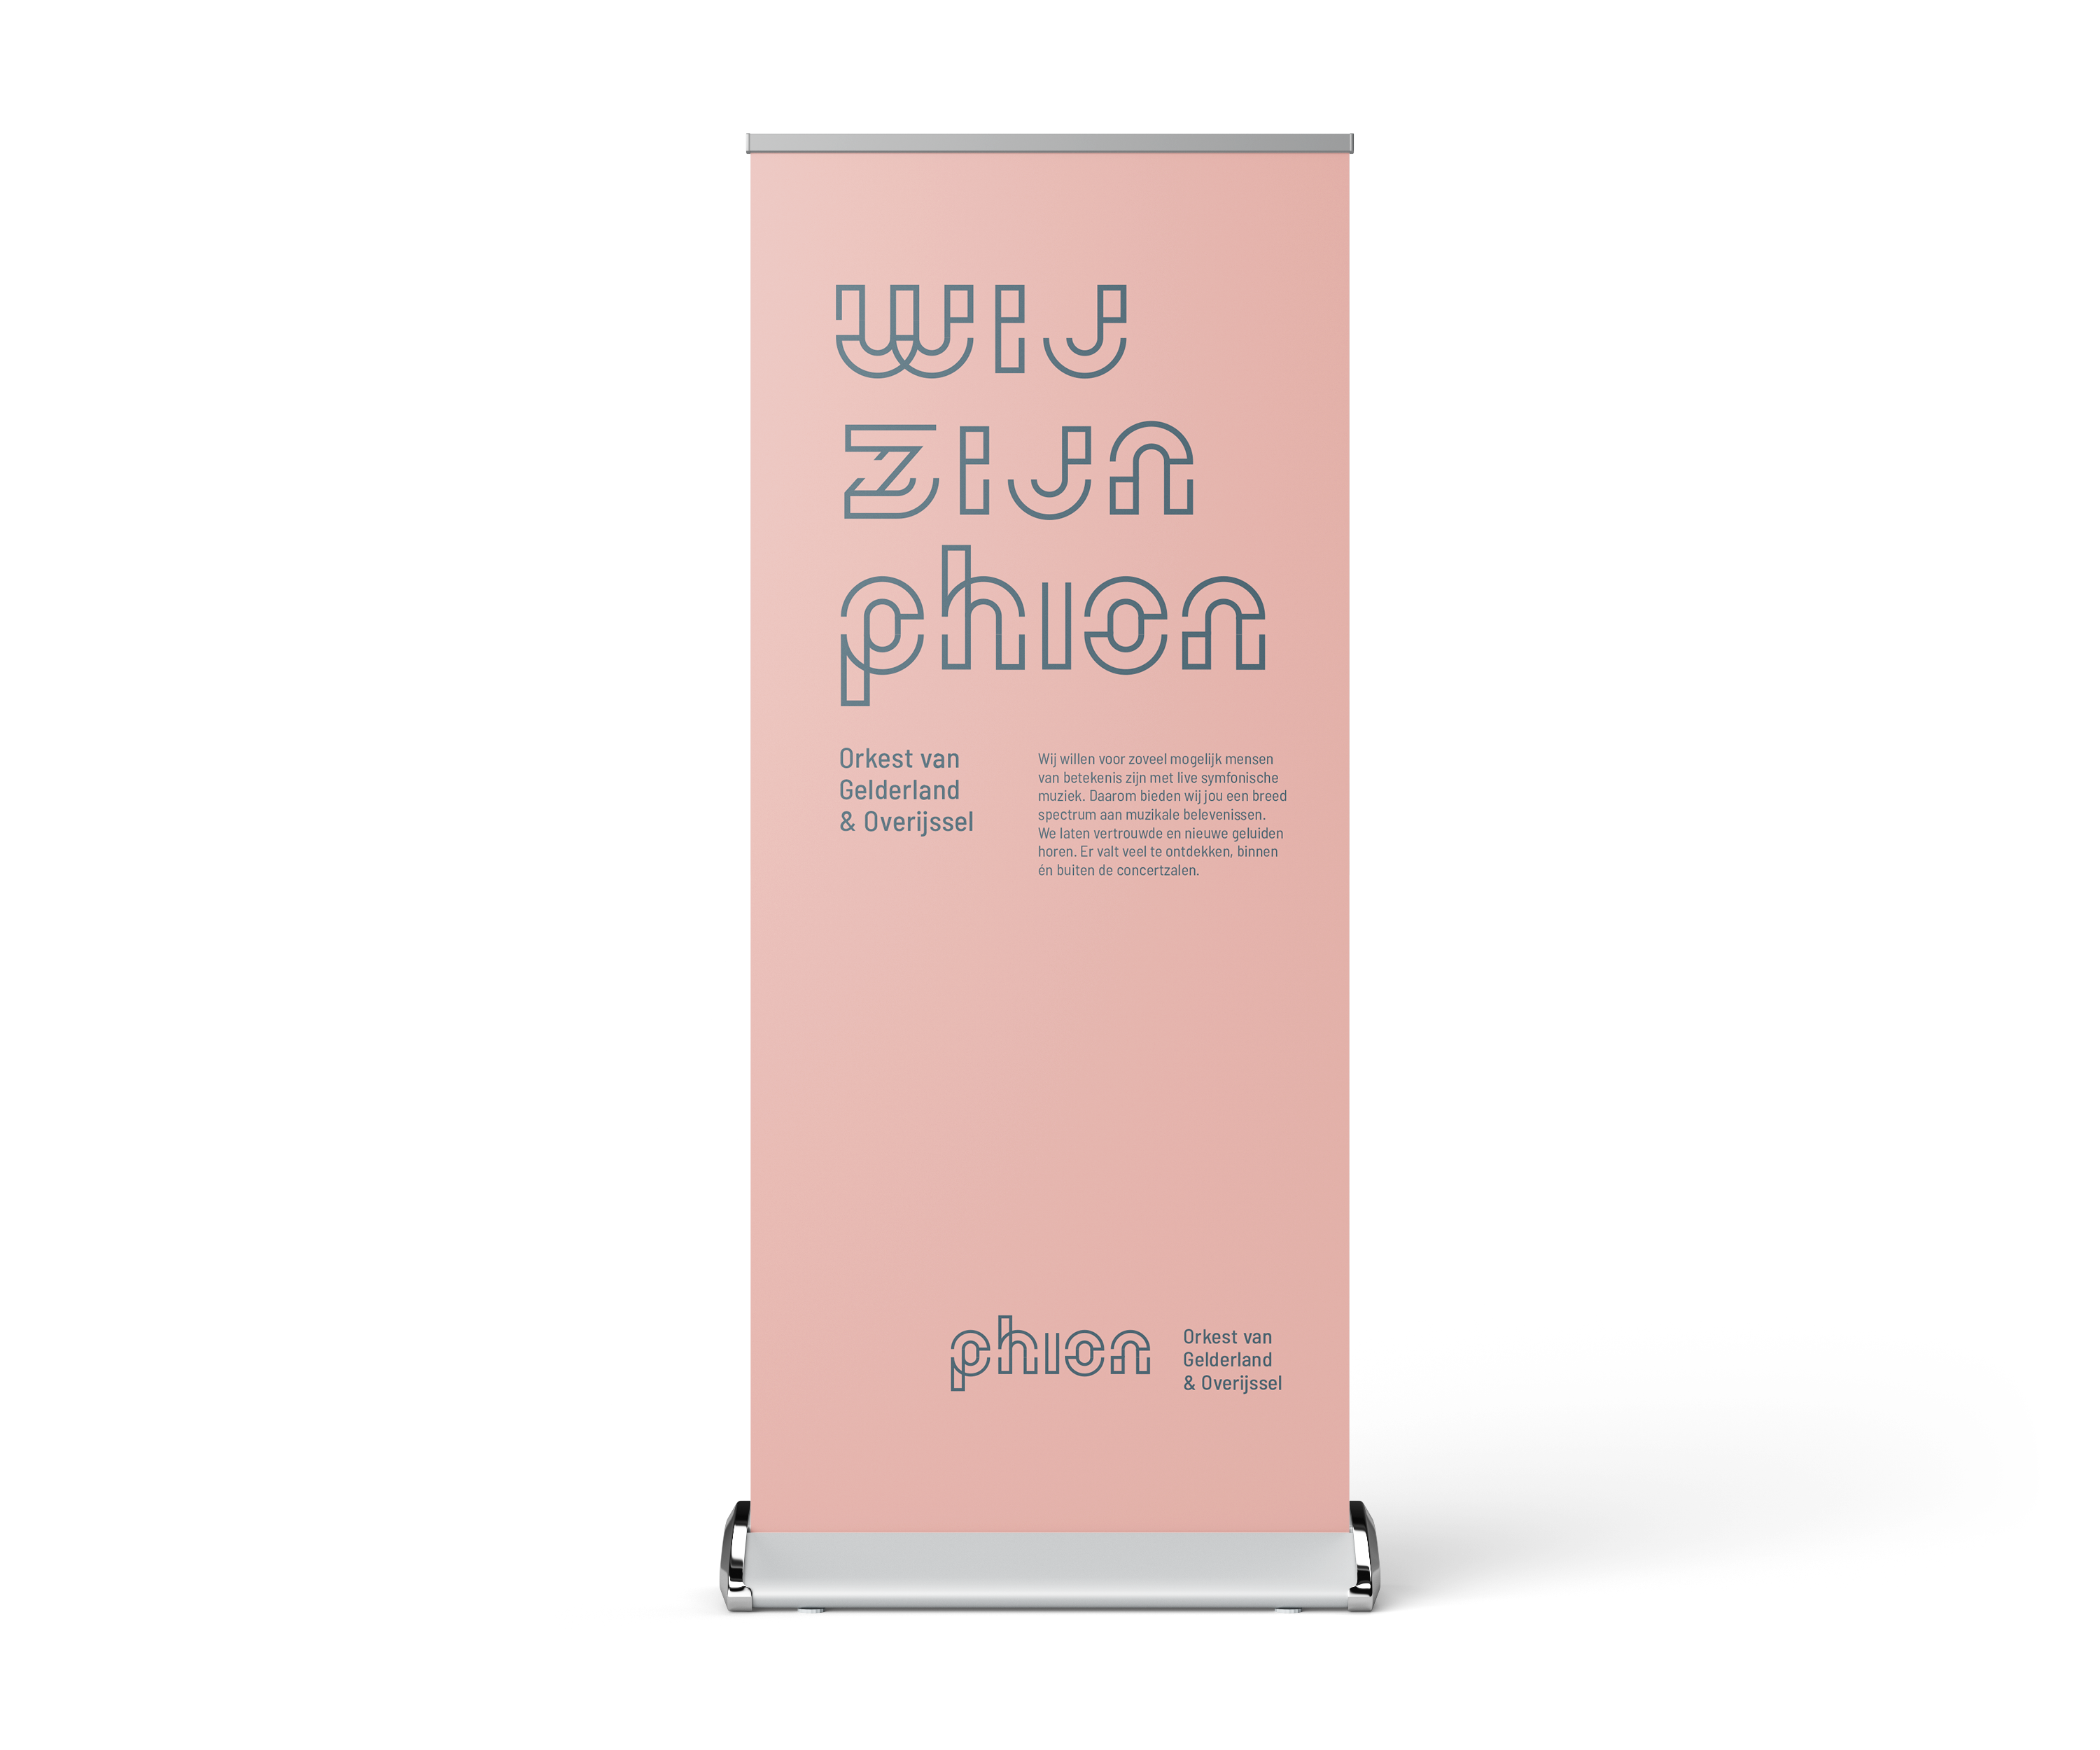 Roze roll-up banner met de tekst: wij zijn phion